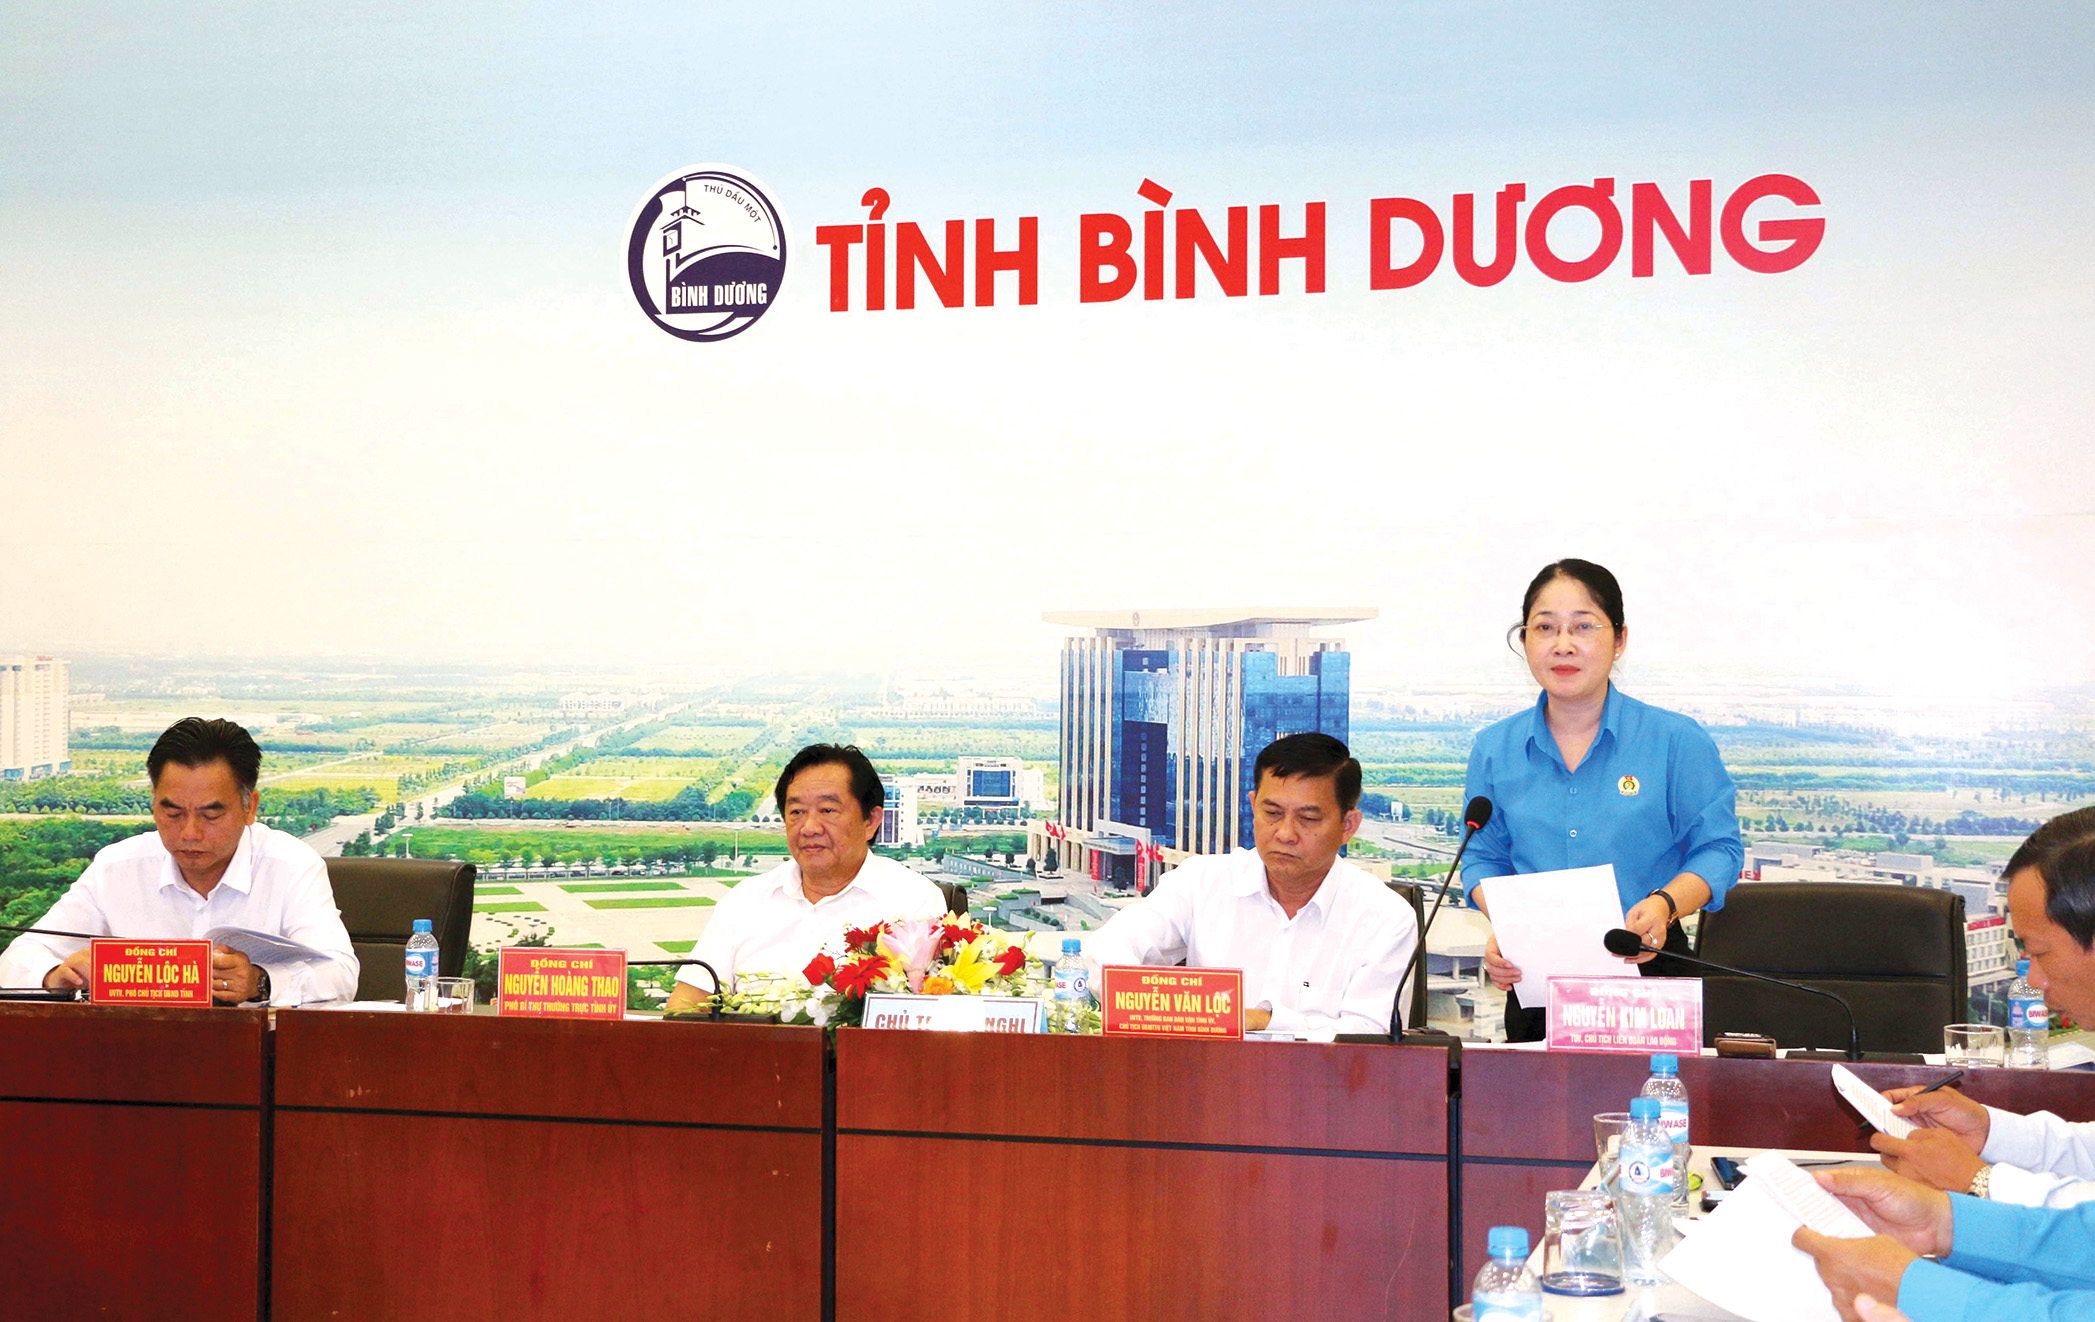 Đồng chí Nguyễn Kim Loan - Chủ tịch Liên đoàn Lao động
            tỉnh Bình Dương phát biểu tại Hội nghị.